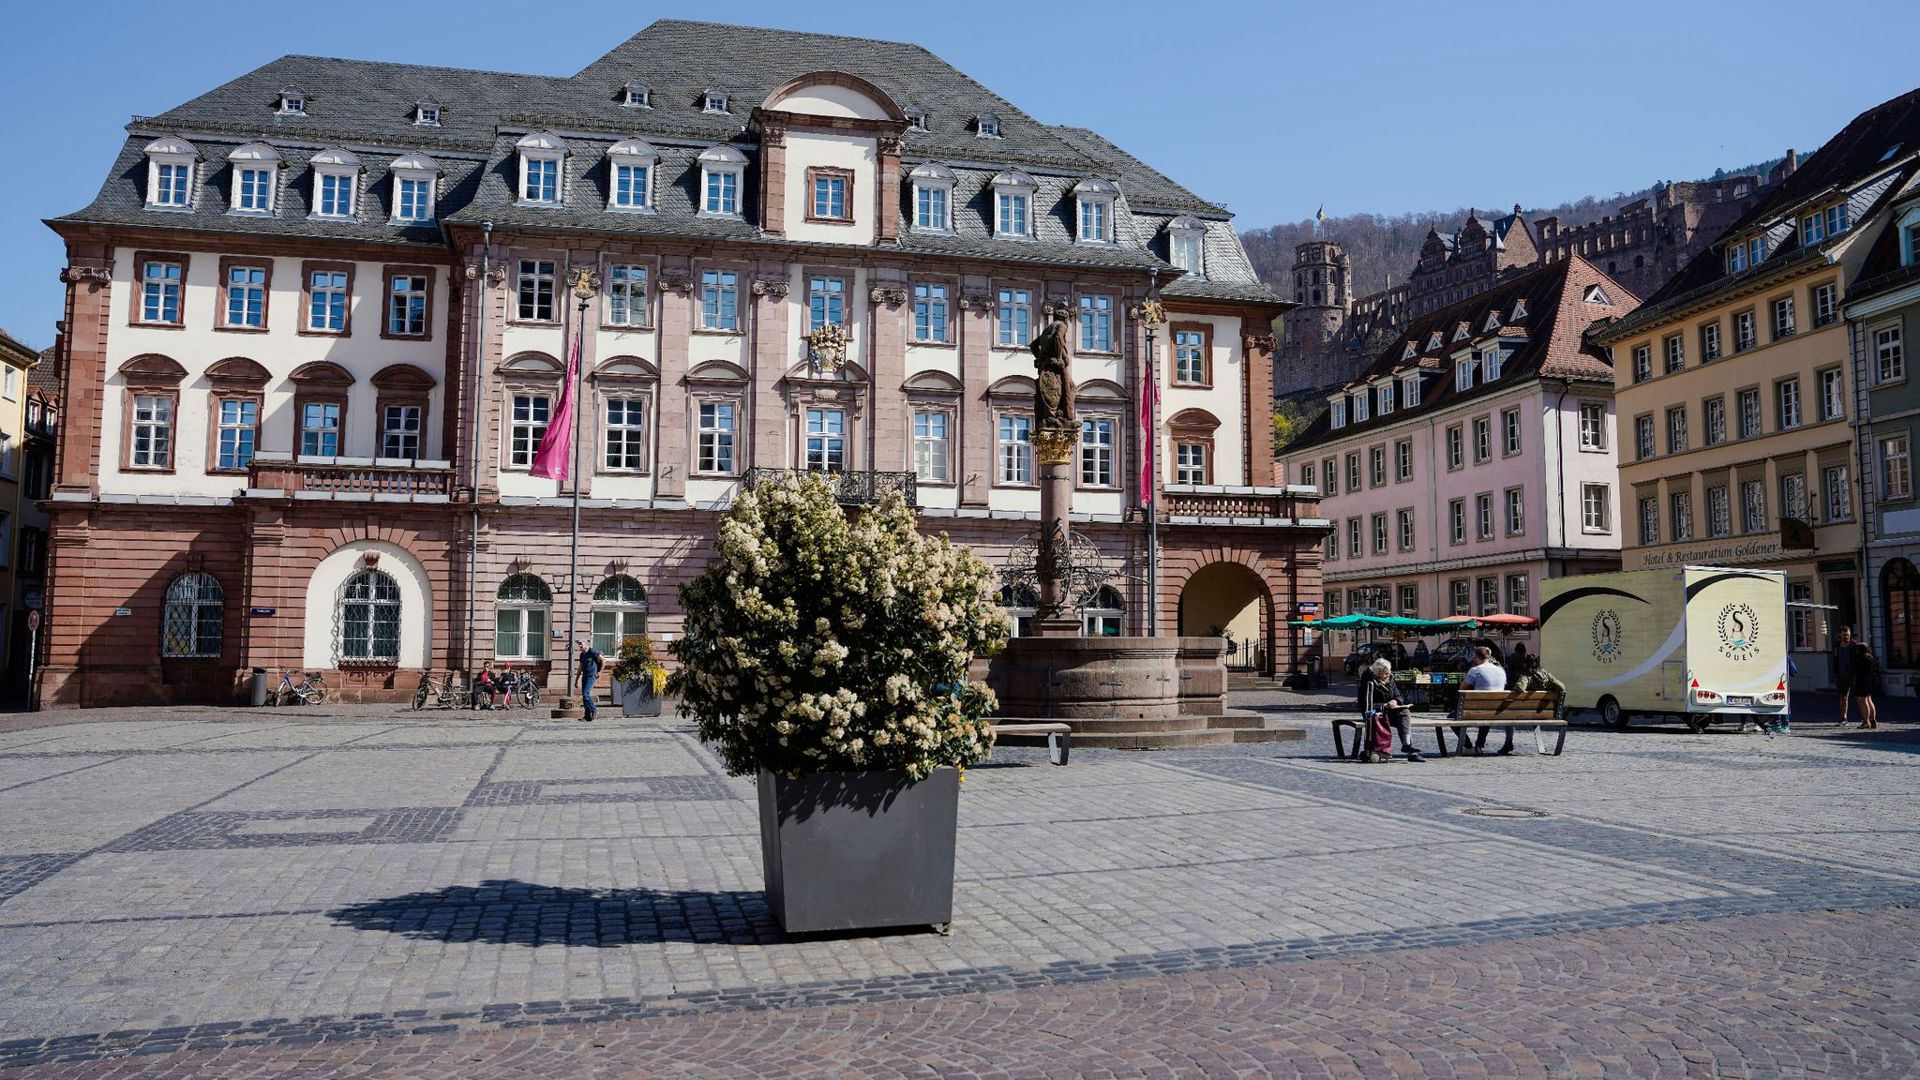 Blick auf den Marktplatz vorm Rathaus.